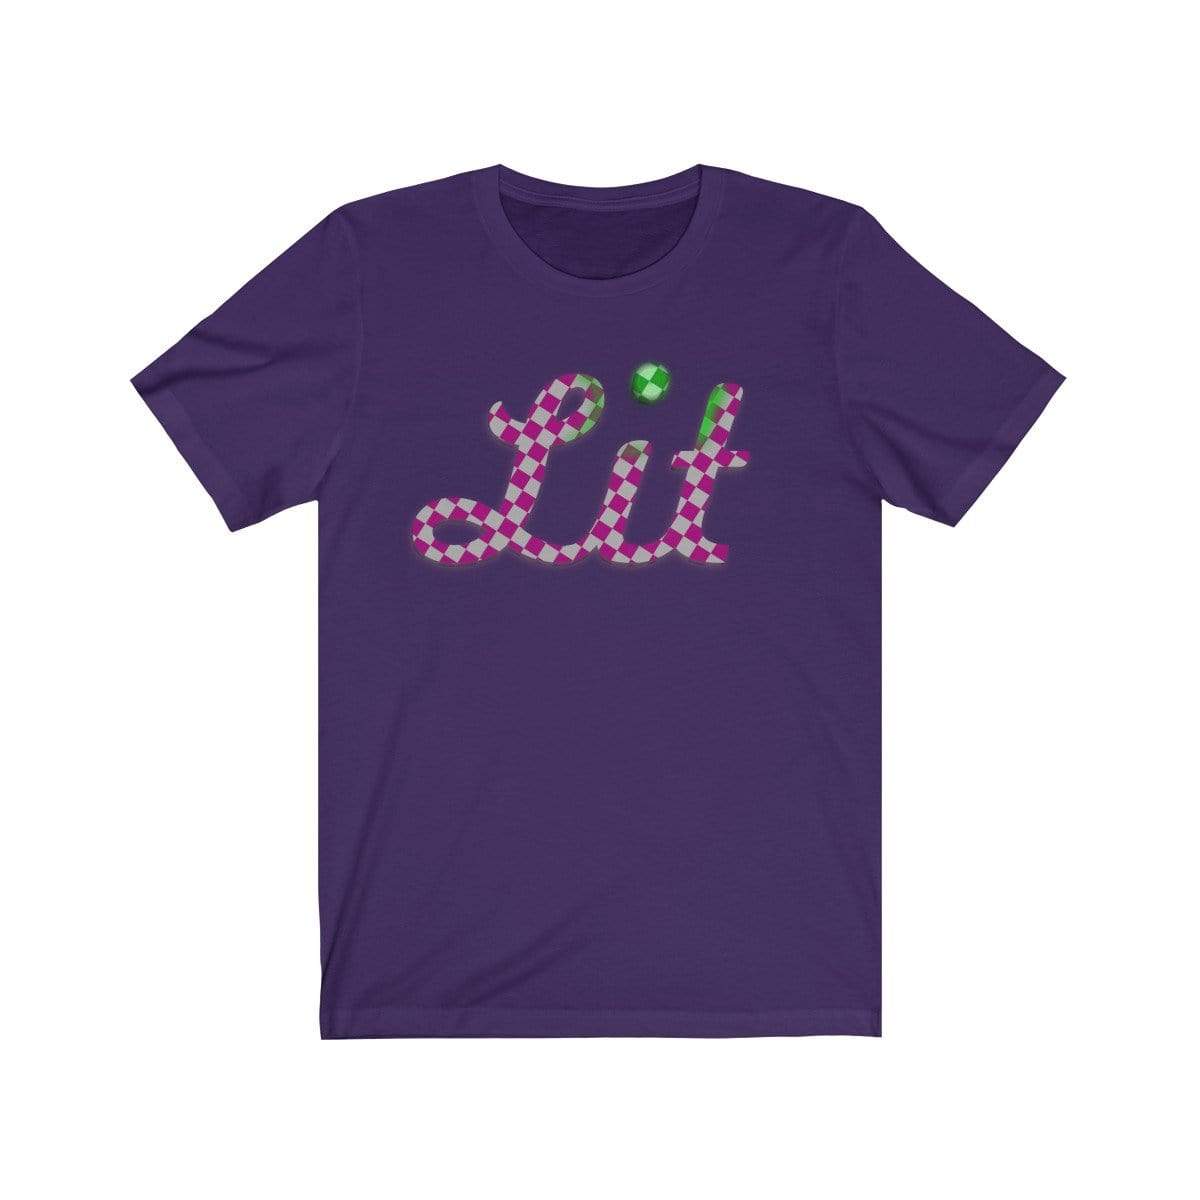 Plumskum T-Shirt Team Purple / S Pink Checkered Lit T-shirt